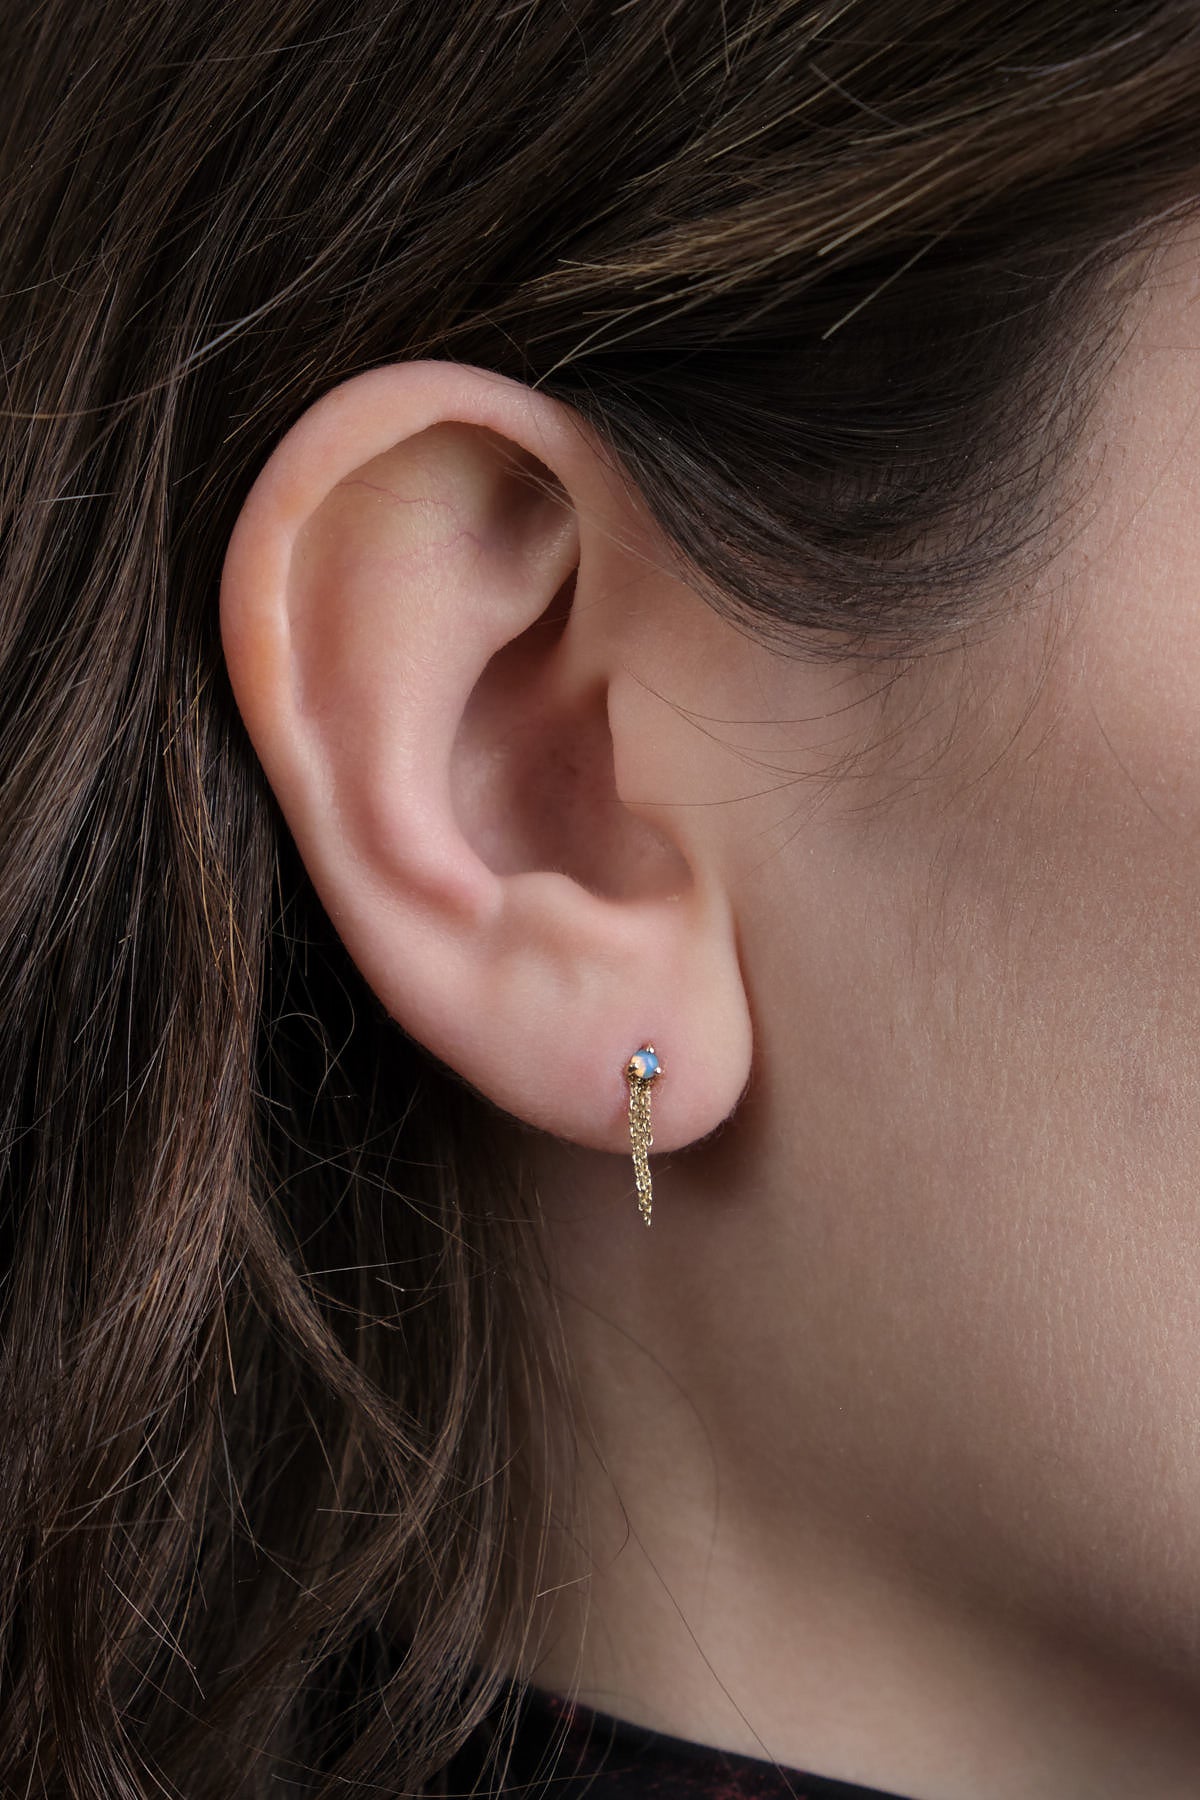 dimple Earring - Flat Back - Single Size 1mm | WWAKE